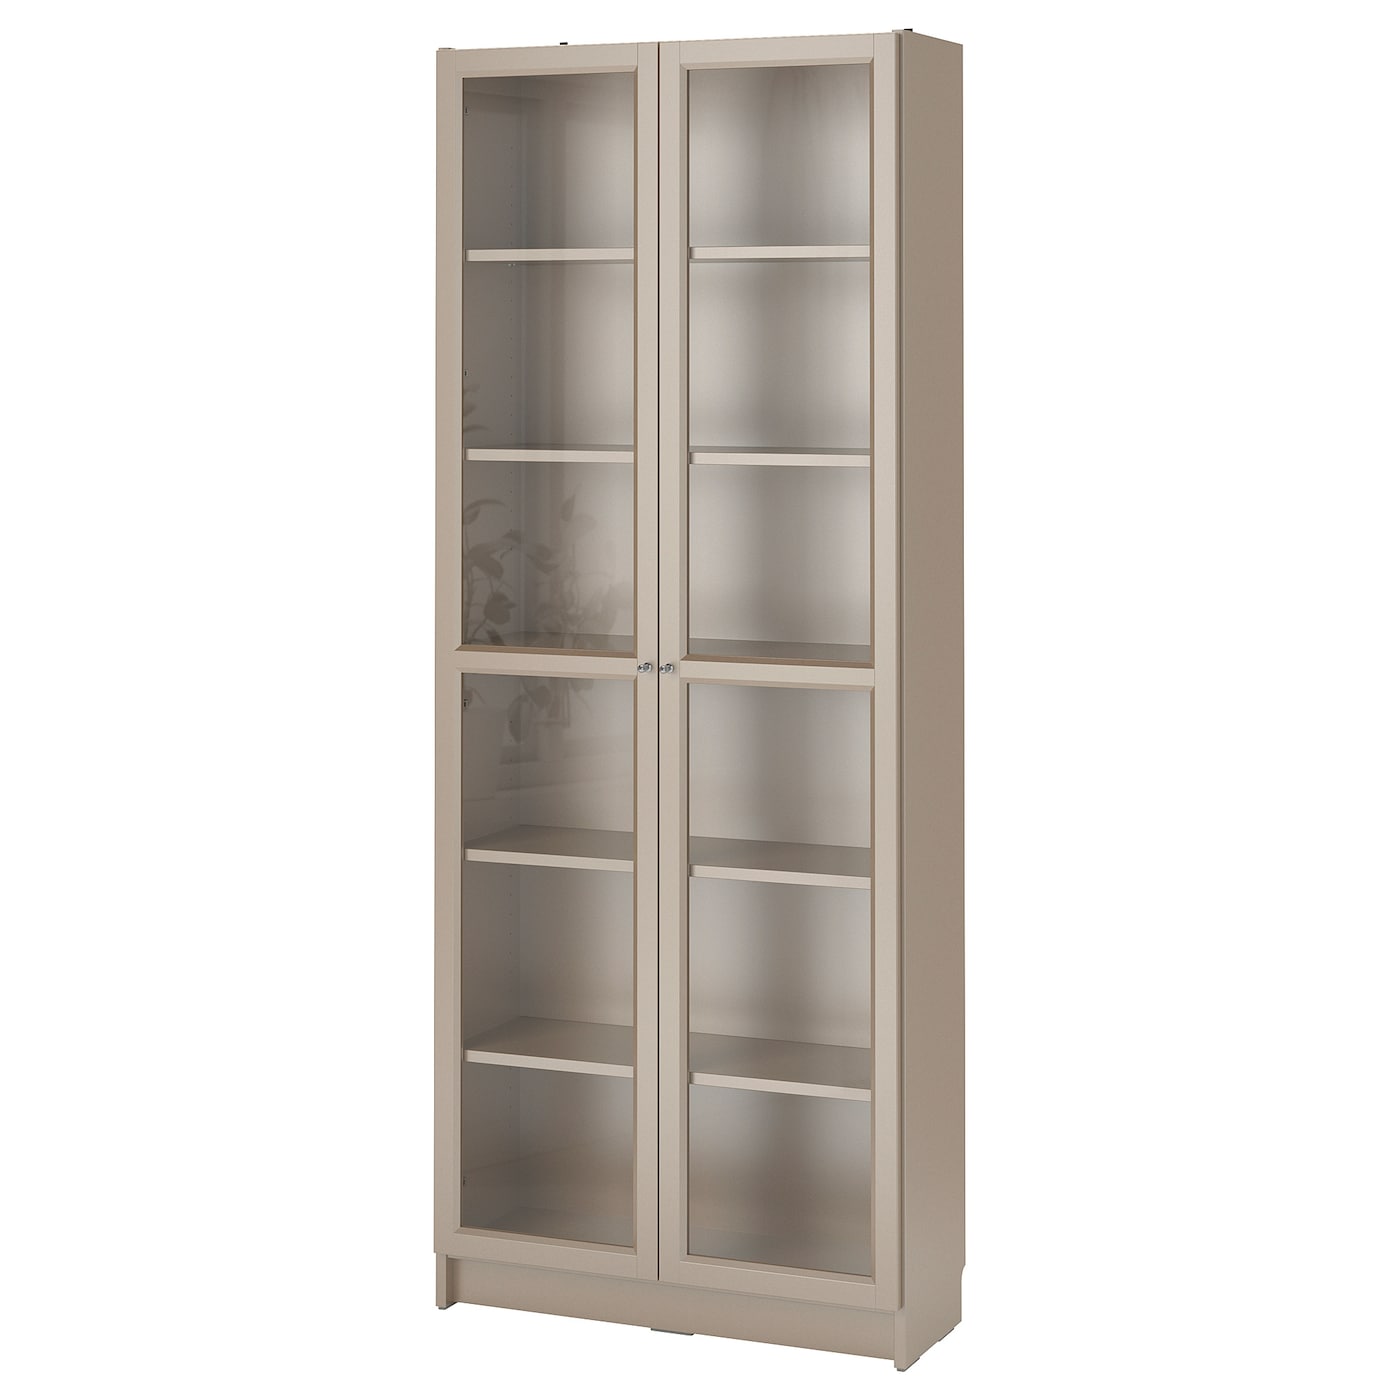 Книжный шкаф со стеклянной дверцей - BILLY IKEA/БИЛЛИ ИКЕА, 30х80х202 см, бежевый